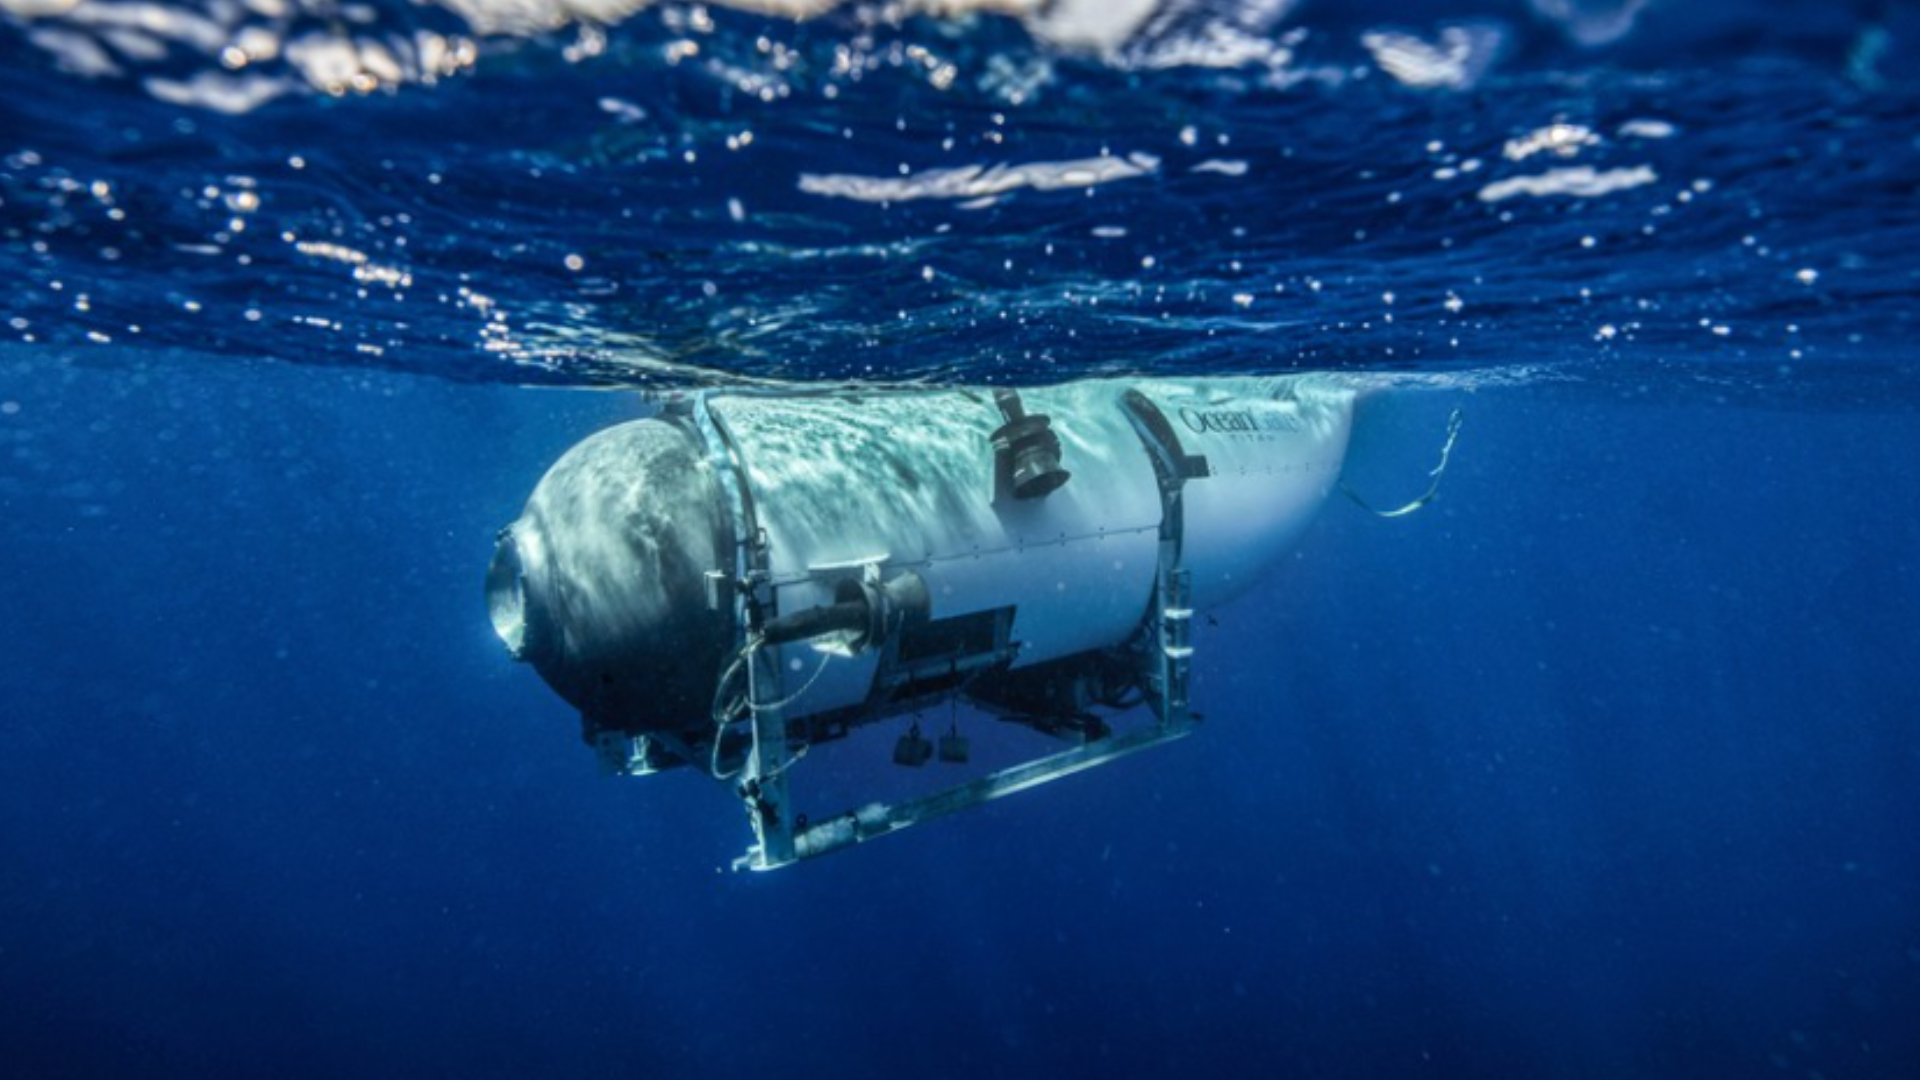 Submarino: Termo isenta OceanGate de qualquer responsabilidade por acidente em alto mar, diz site